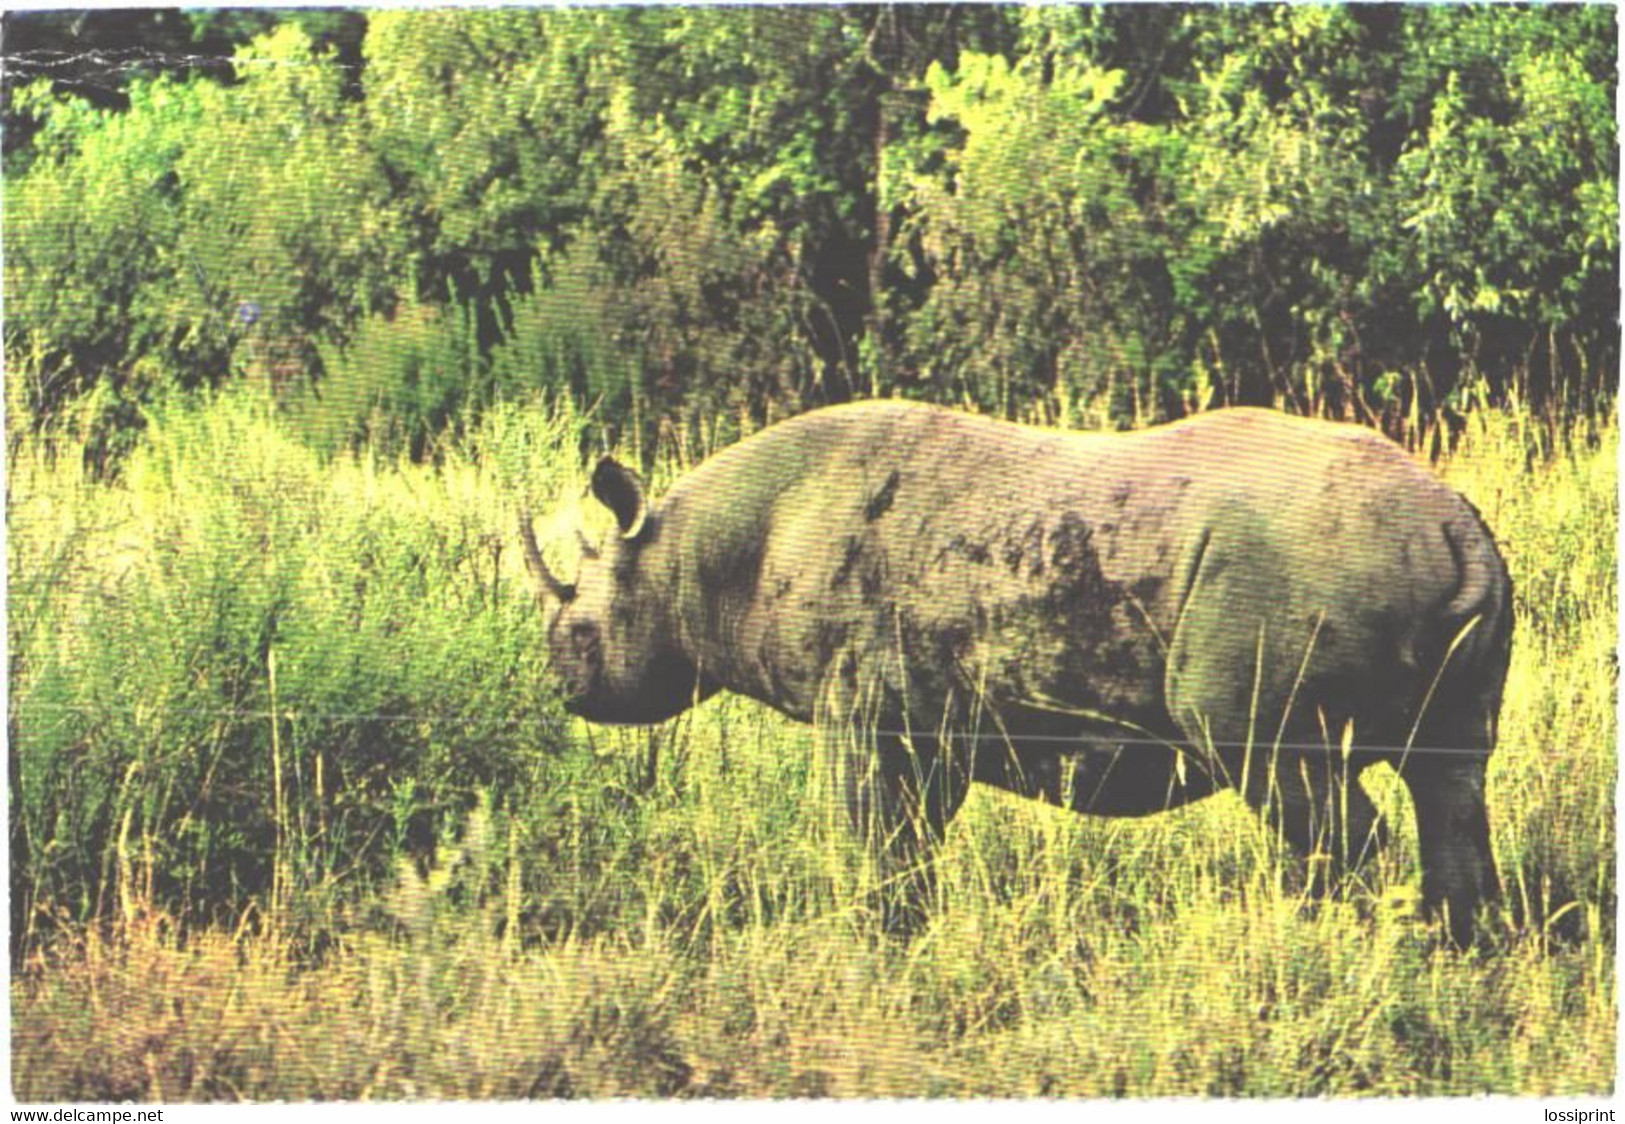 Walking Rhinoceros - Rhinozeros